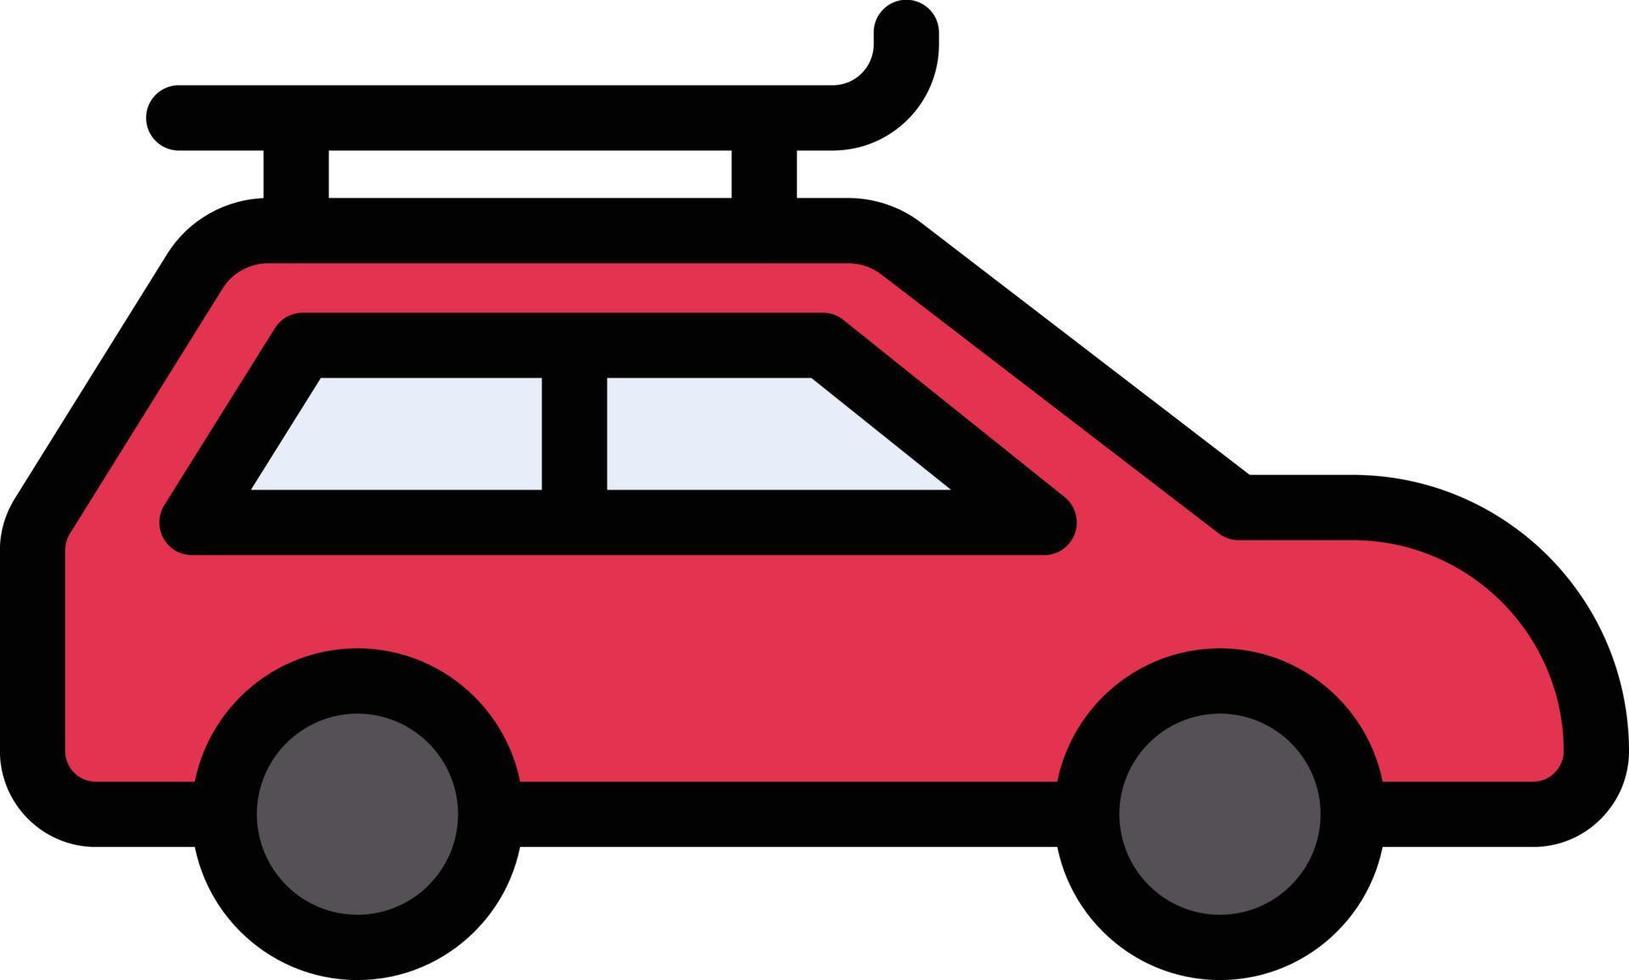 Cab-Vektor-Illustration auf einem Hintergrund. Premium-Qualitäts-Symbole. Vektor-Icons für Konzept und Grafikdesign. vektor